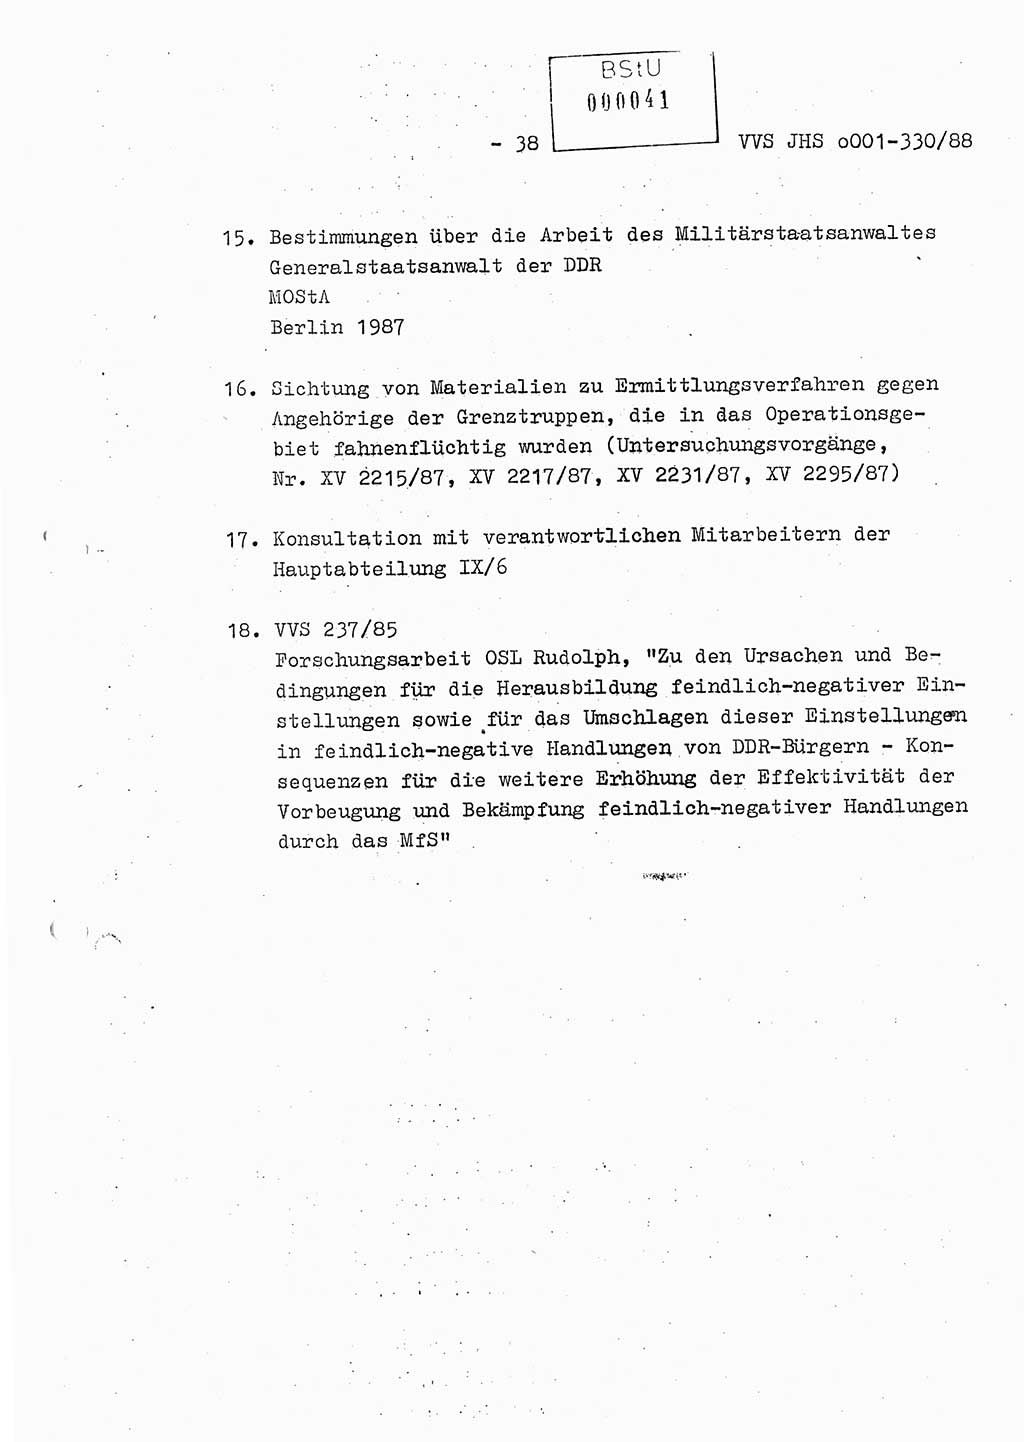 Diplomarbeit Offiziersschüler Thomas Mühle (HA Ⅸ/6), Ministerium für Staatssicherheit (MfS) [Deutsche Demokratische Republik (DDR)], Juristische Hochschule (JHS), Vertrauliche Verschlußsache (VVS) o001-330/88, Potsdam 1988, Seite 38 (Dipl.-Arb. MfS DDR JHS VVS o001-330/88 1988, S. 38)